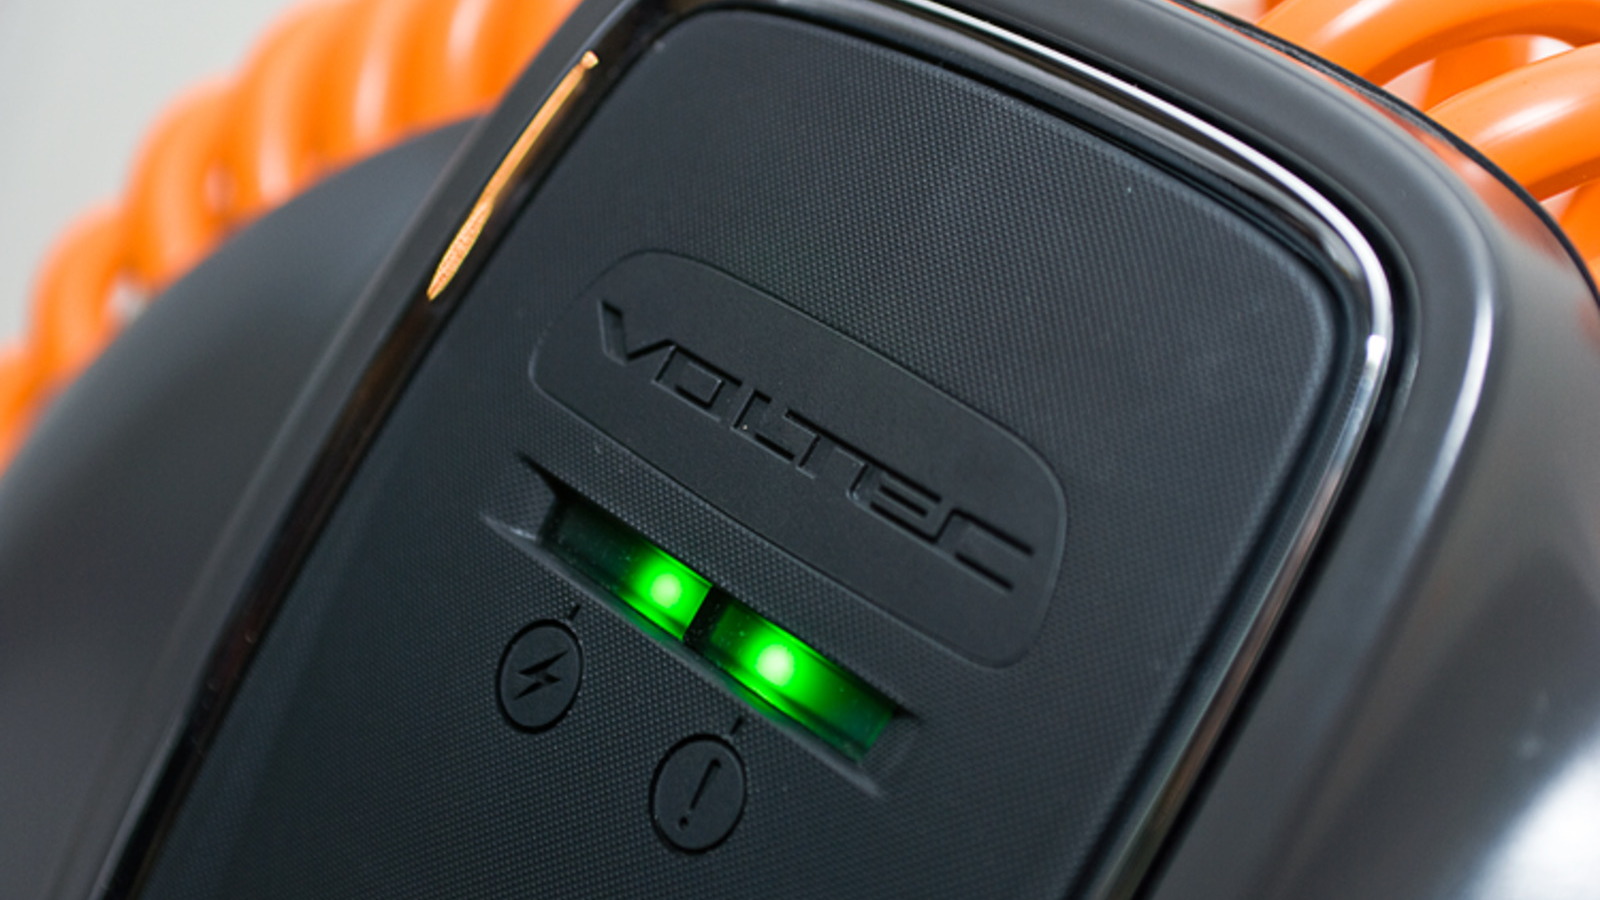 2011 Chevrolet Volt 240V charging station